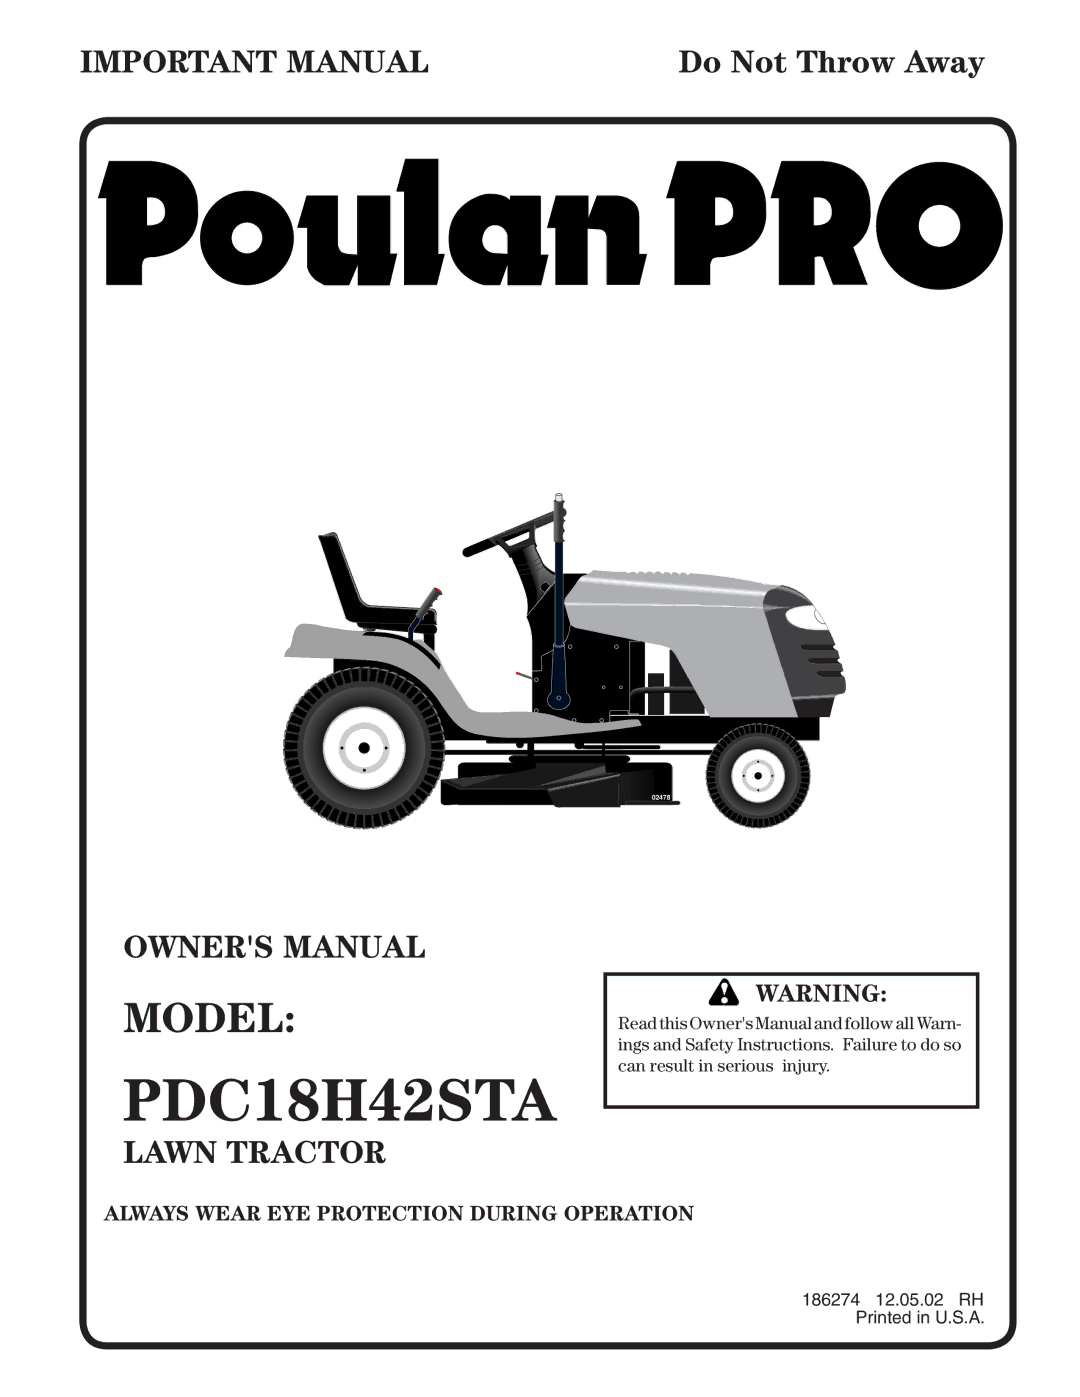 Poulan PDC18H42STA owner manual 